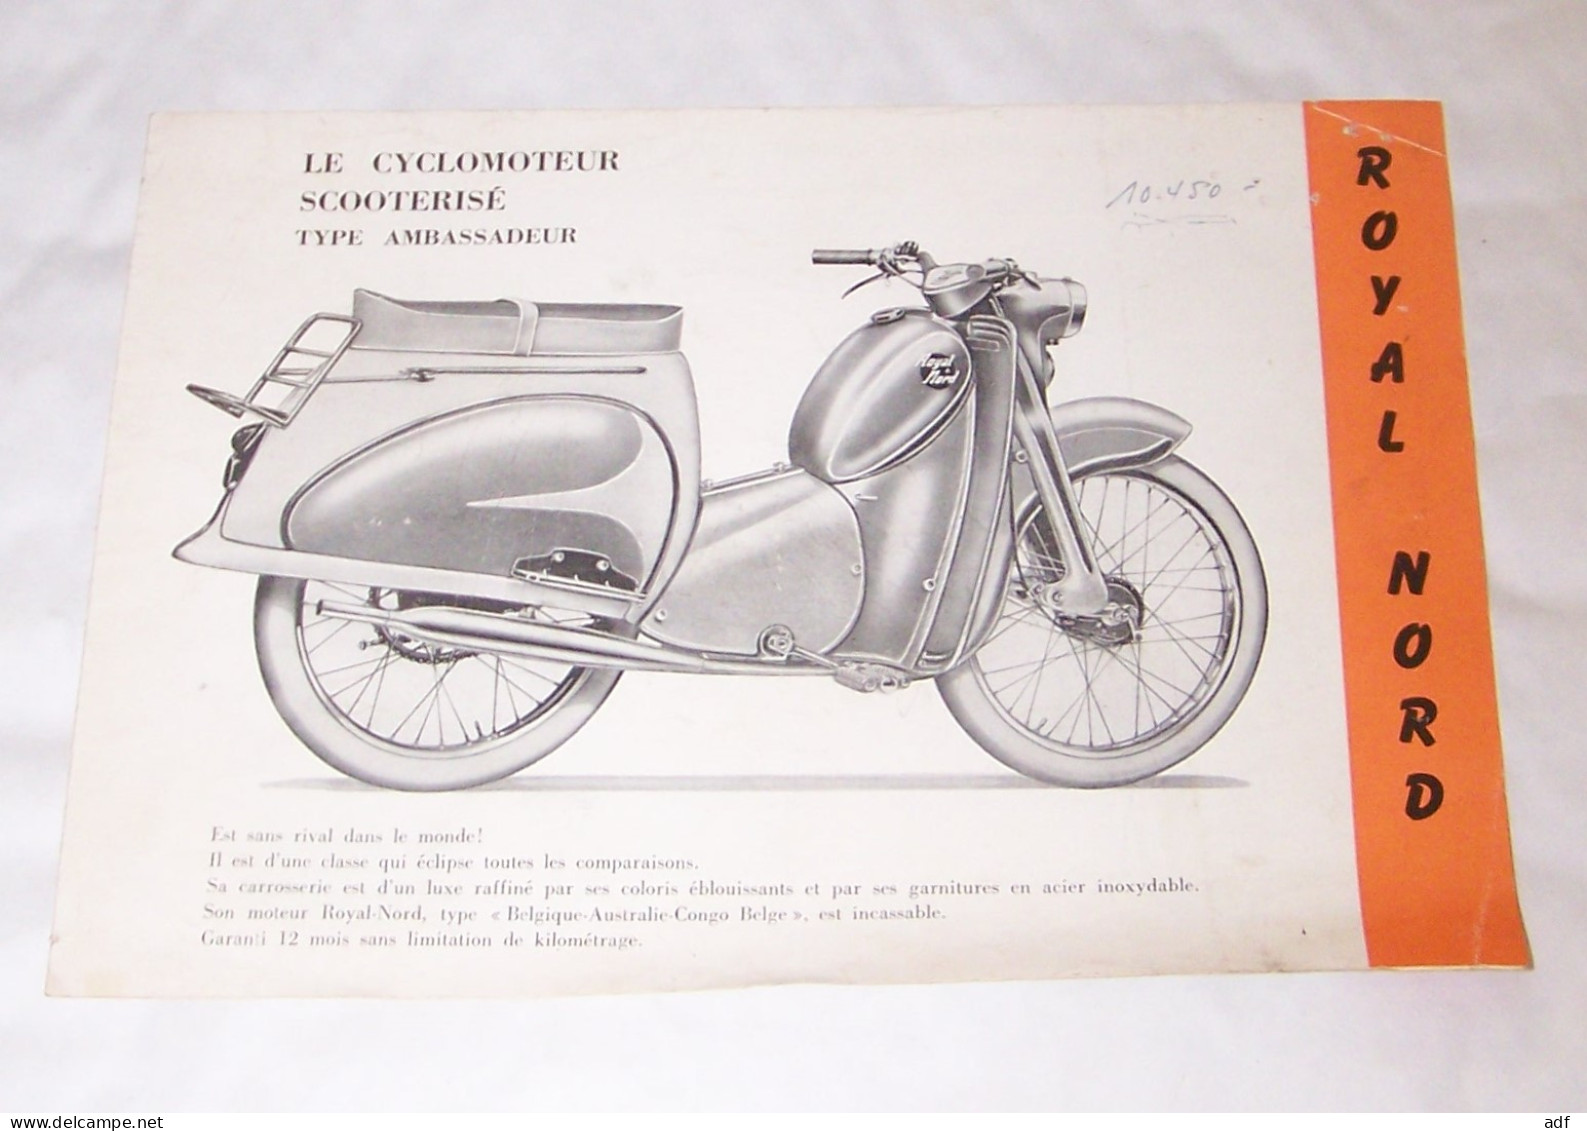 DEPLIANT PUB PUBLICITAIRE ROYAL NORD LE CYCLOMOTEUR CYCLO MOTEUR SCOOTERISE TYPE AMBASSADEUR, SCOOTER, SUPERLUXE 1959 - Motos